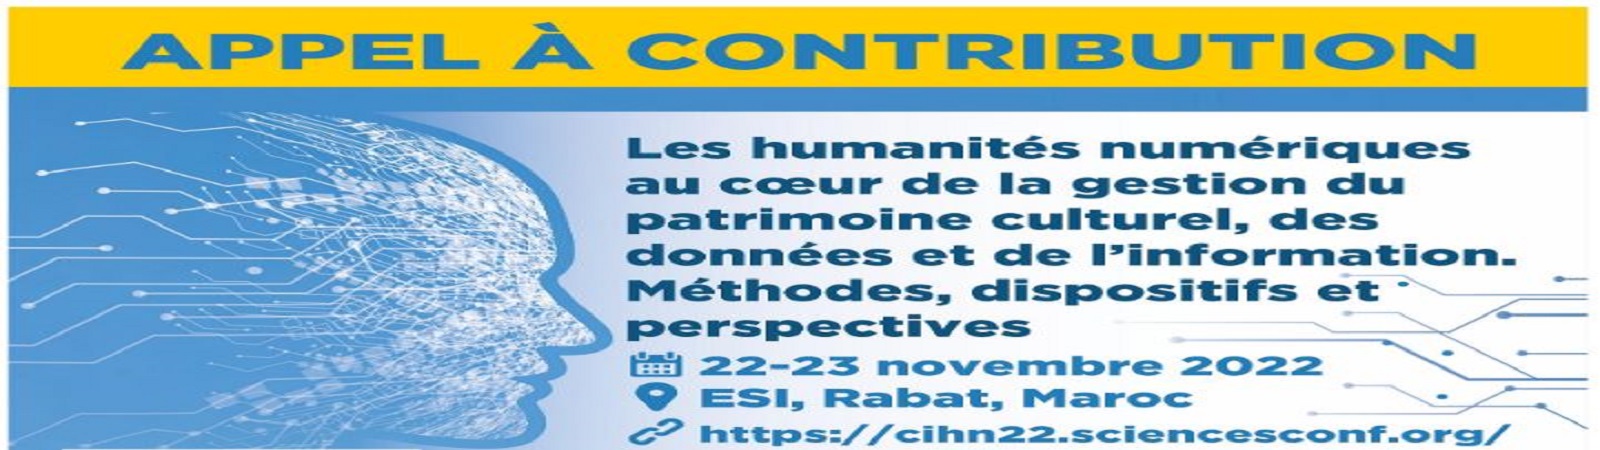 1ère édition de la conférence internationale « Humanités numériques » (CIHN22)